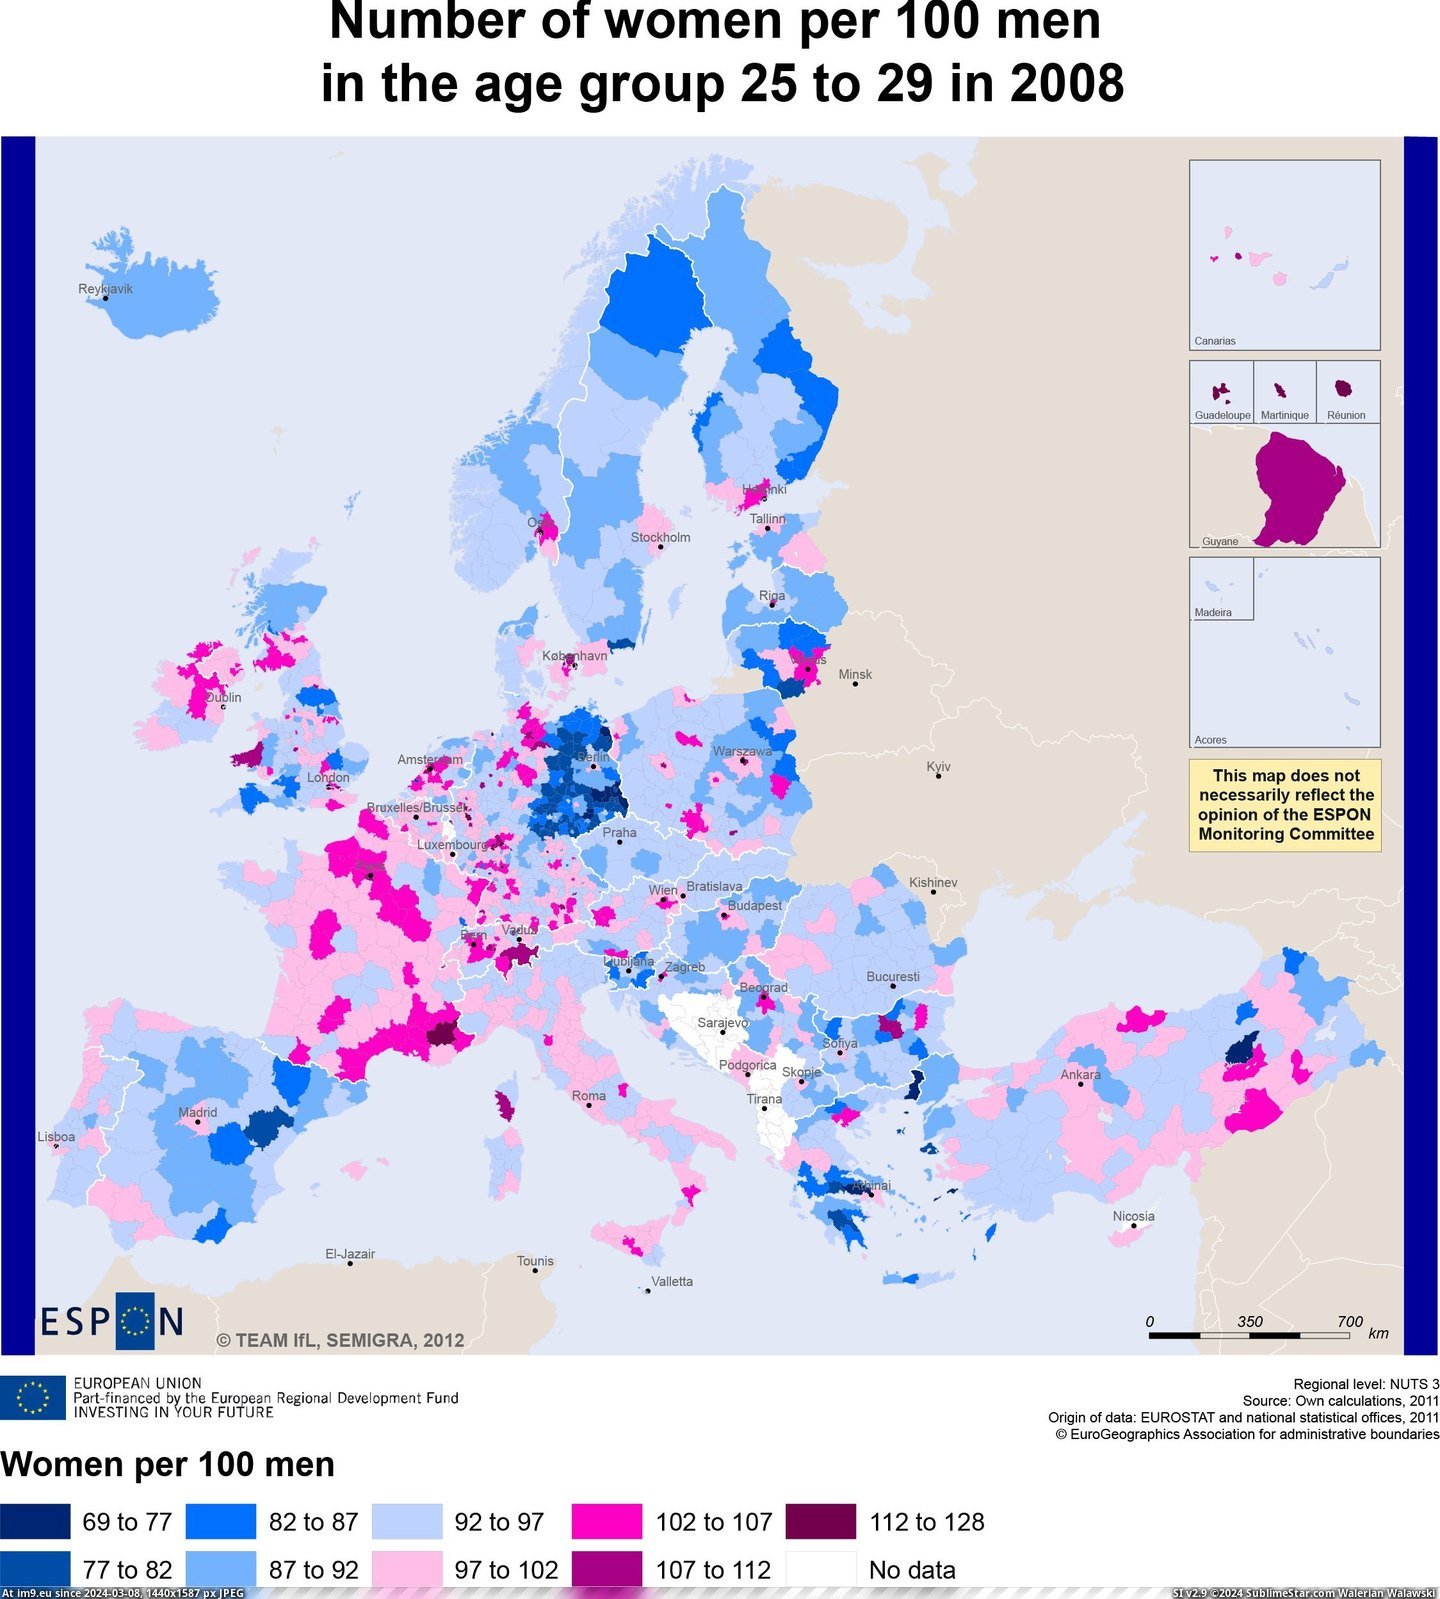 #Europe #Women #Group #Age #Men #Number [Mapporn] Number of Women per 100 Men in the Age Group 25 to 29 in Europe [2249x2490] Pic. (Bild von album My r/MAPS favs))